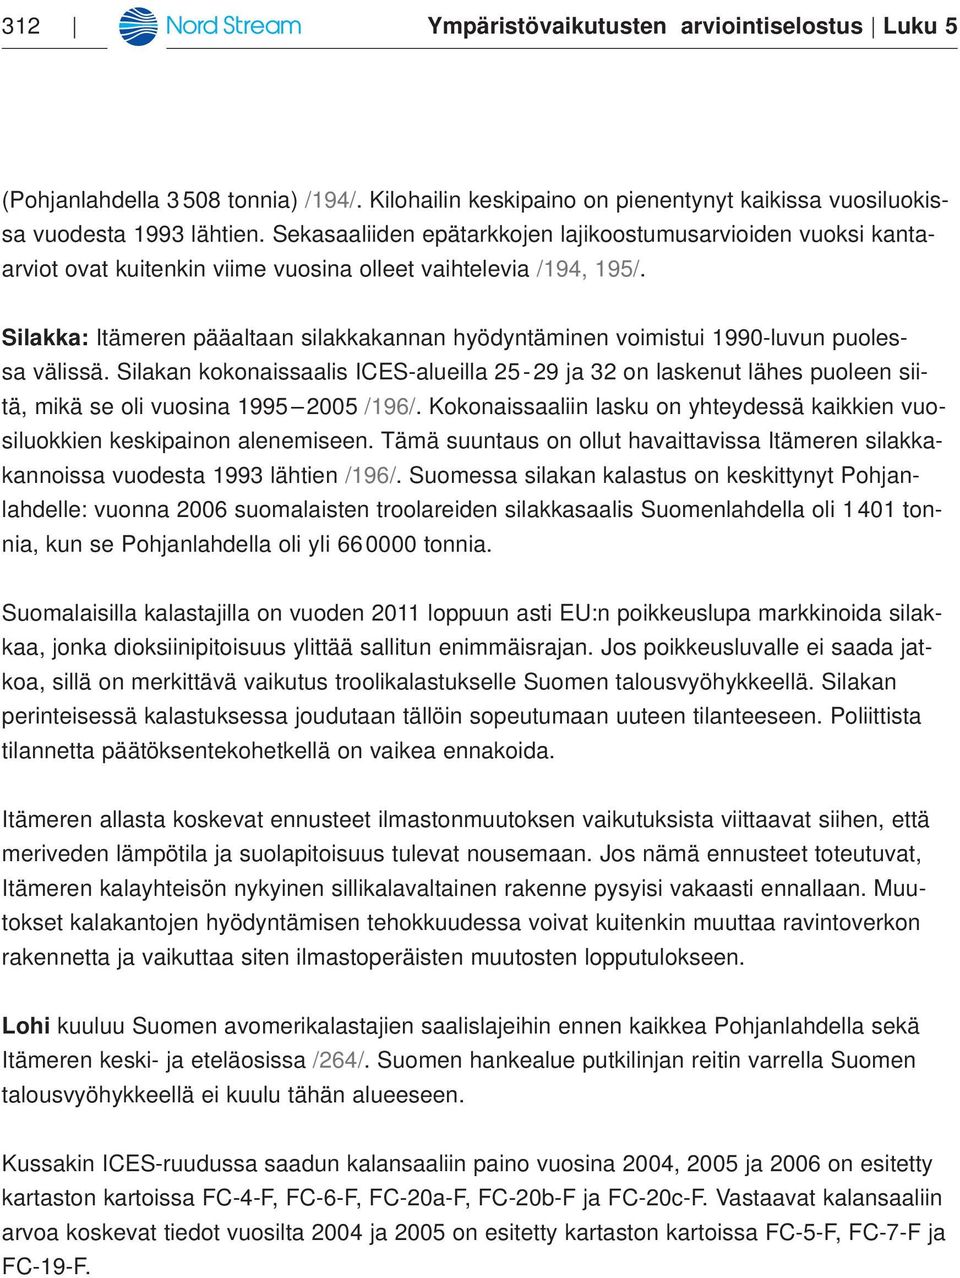 Silakka: Itämeren pääaltaan silakkakannan hyödyntäminen voimistui 1990-luvun puolessa välissä.